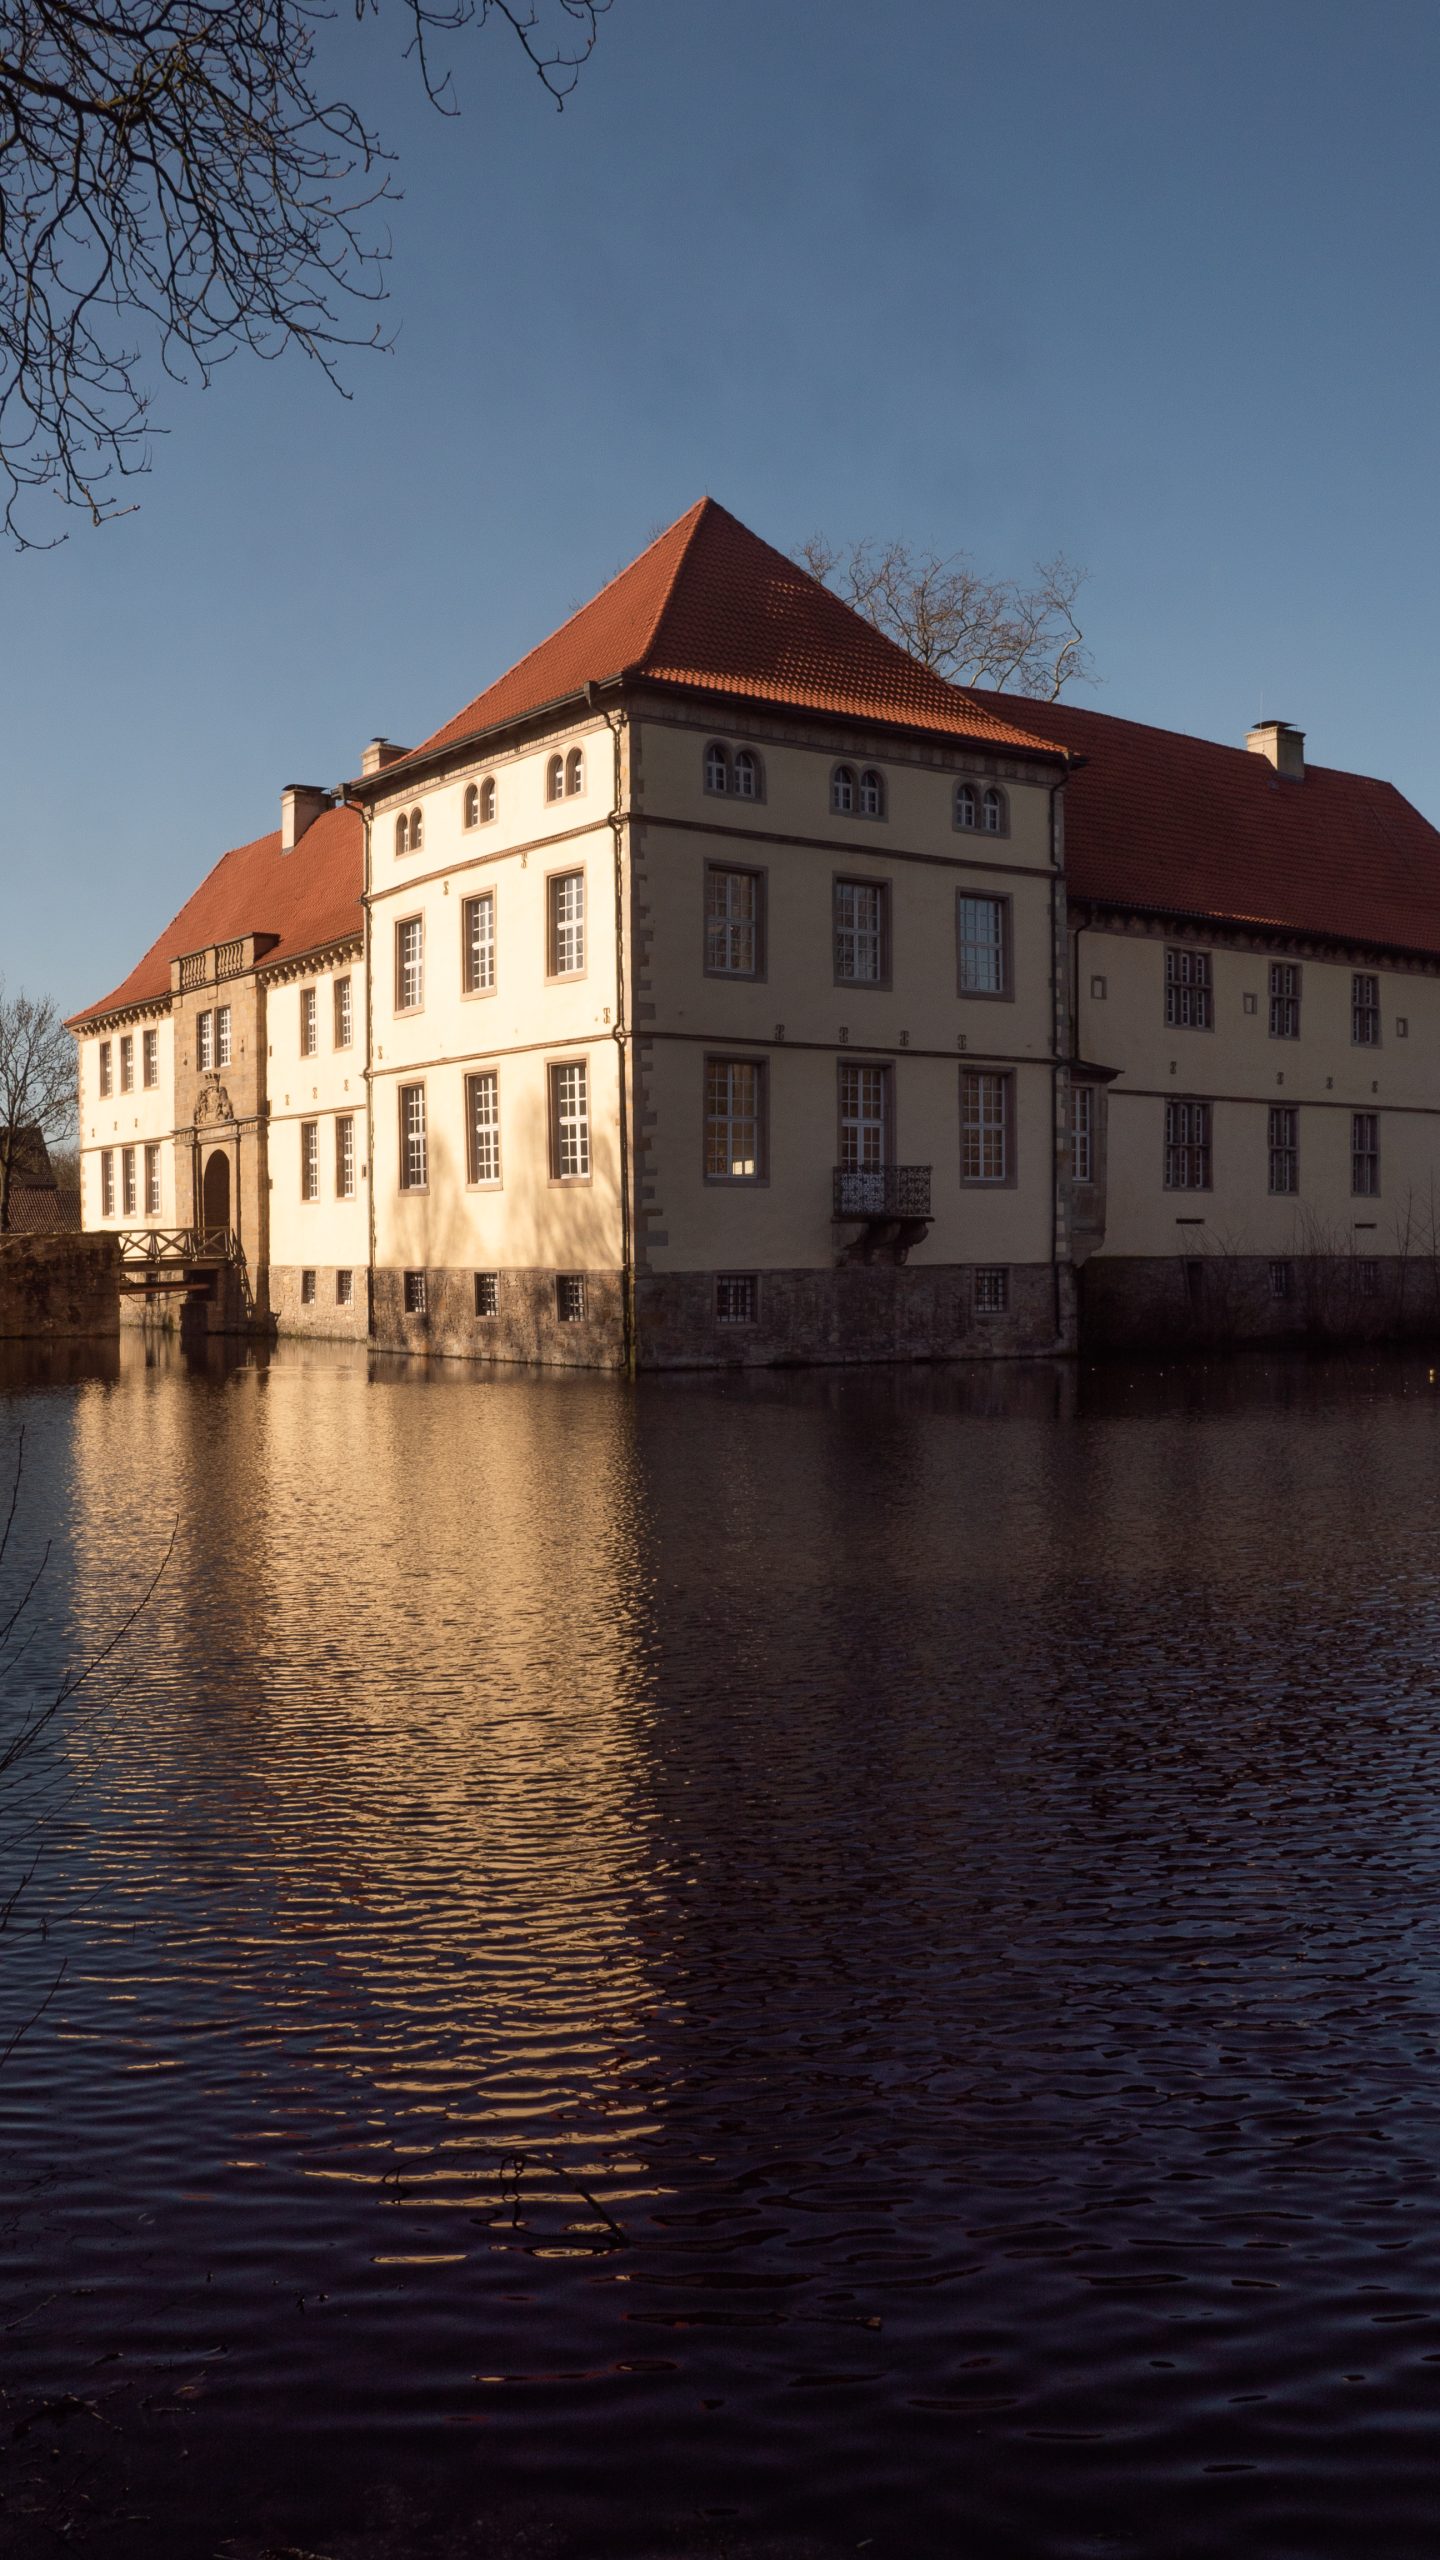 Das Bild zeigt das Schloss Strünkede in Herne